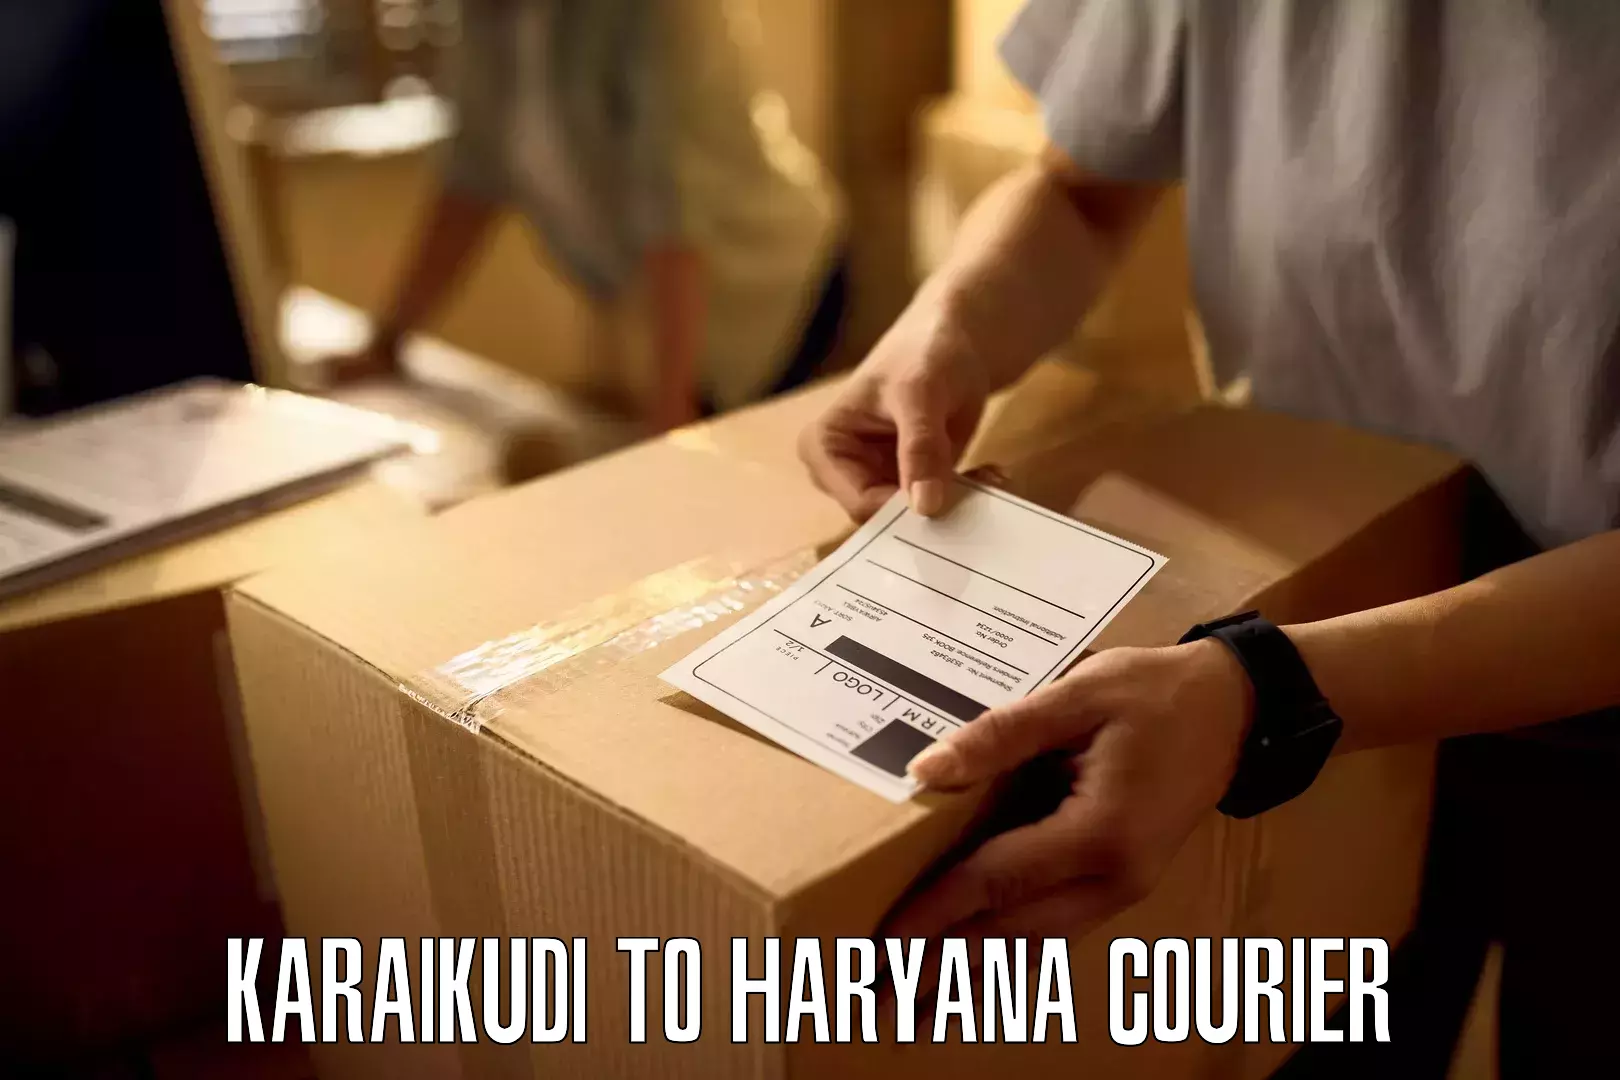 Professional courier handling Karaikudi to Barwala